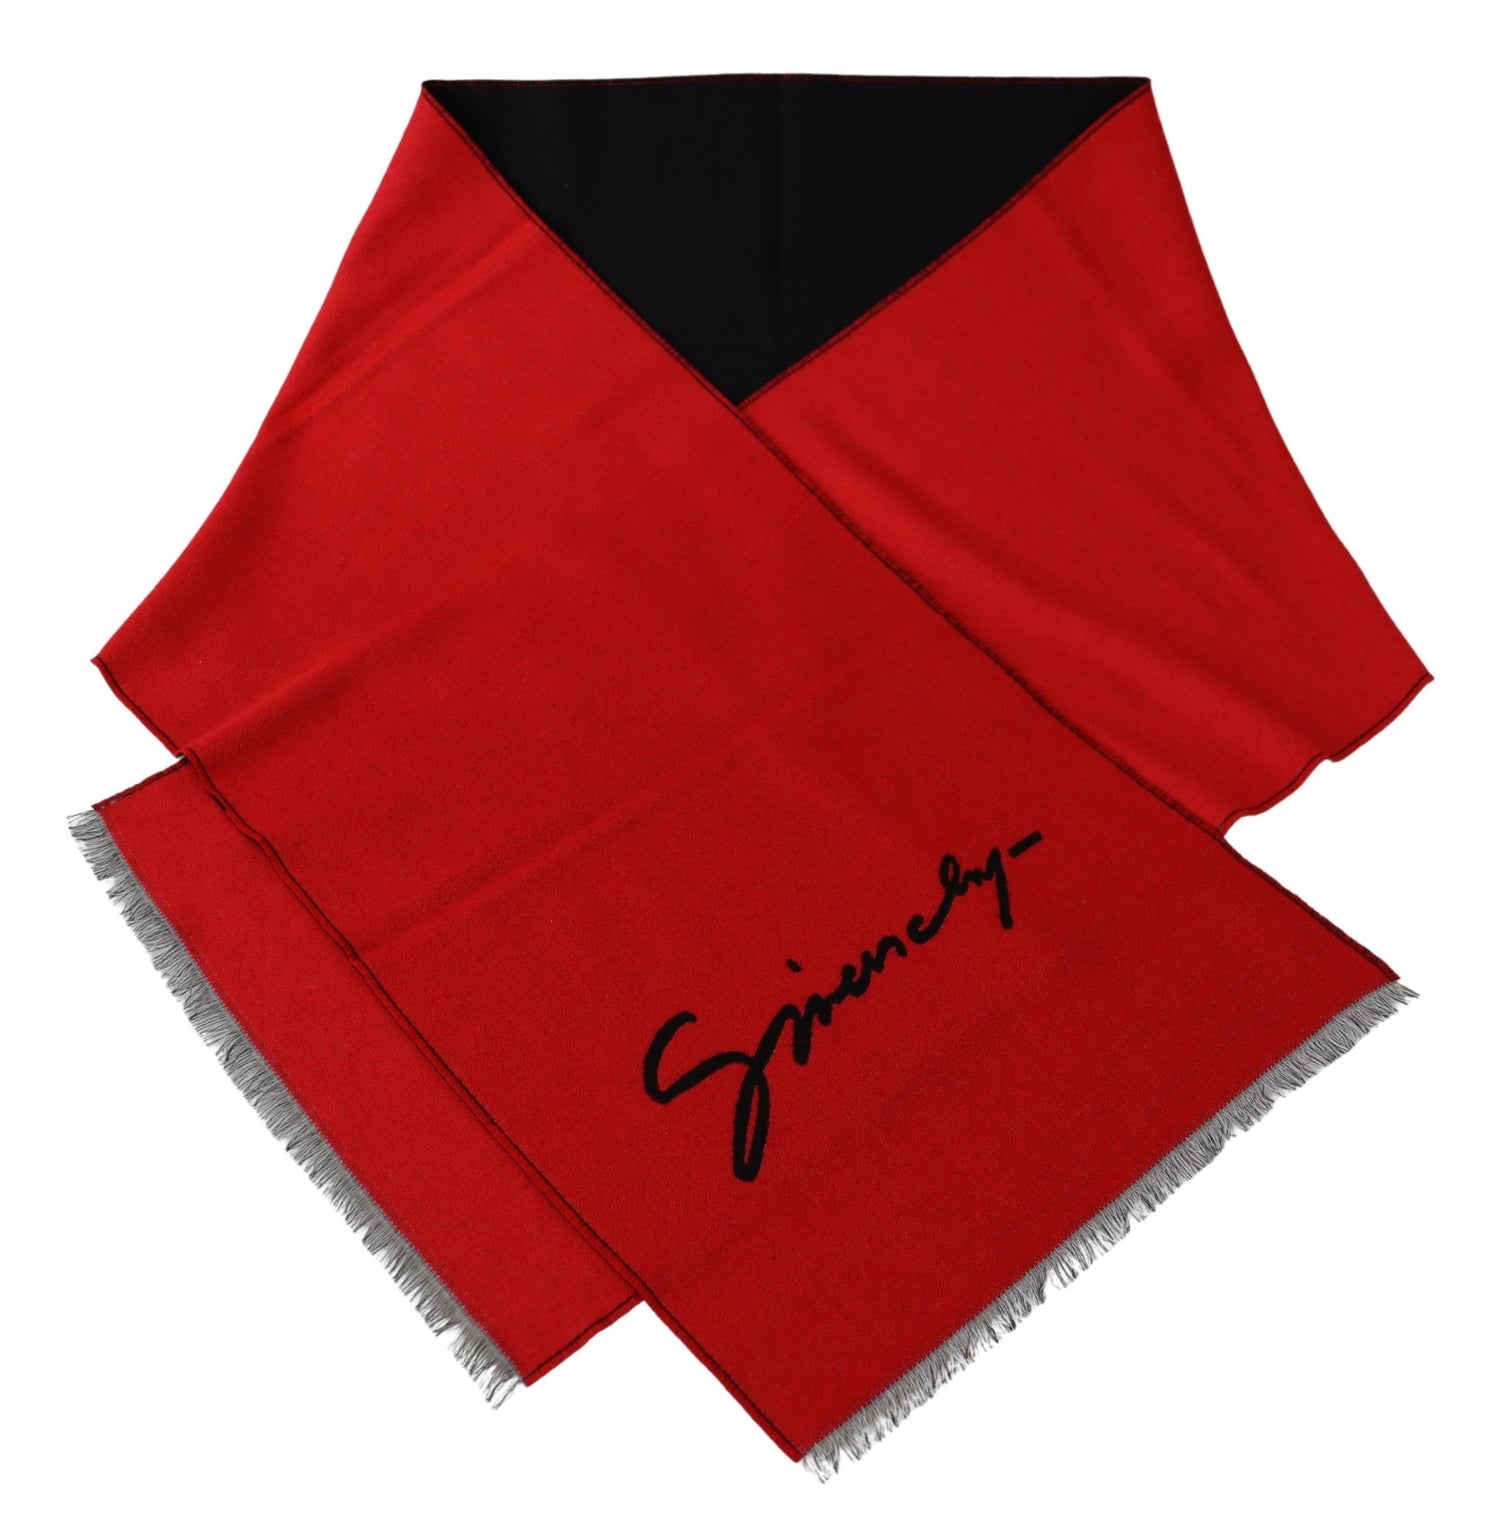 Givenchy Red Black Wool Unisex Winter Warm Scarf Wrap Shawl - DEA STILOSA MILANO